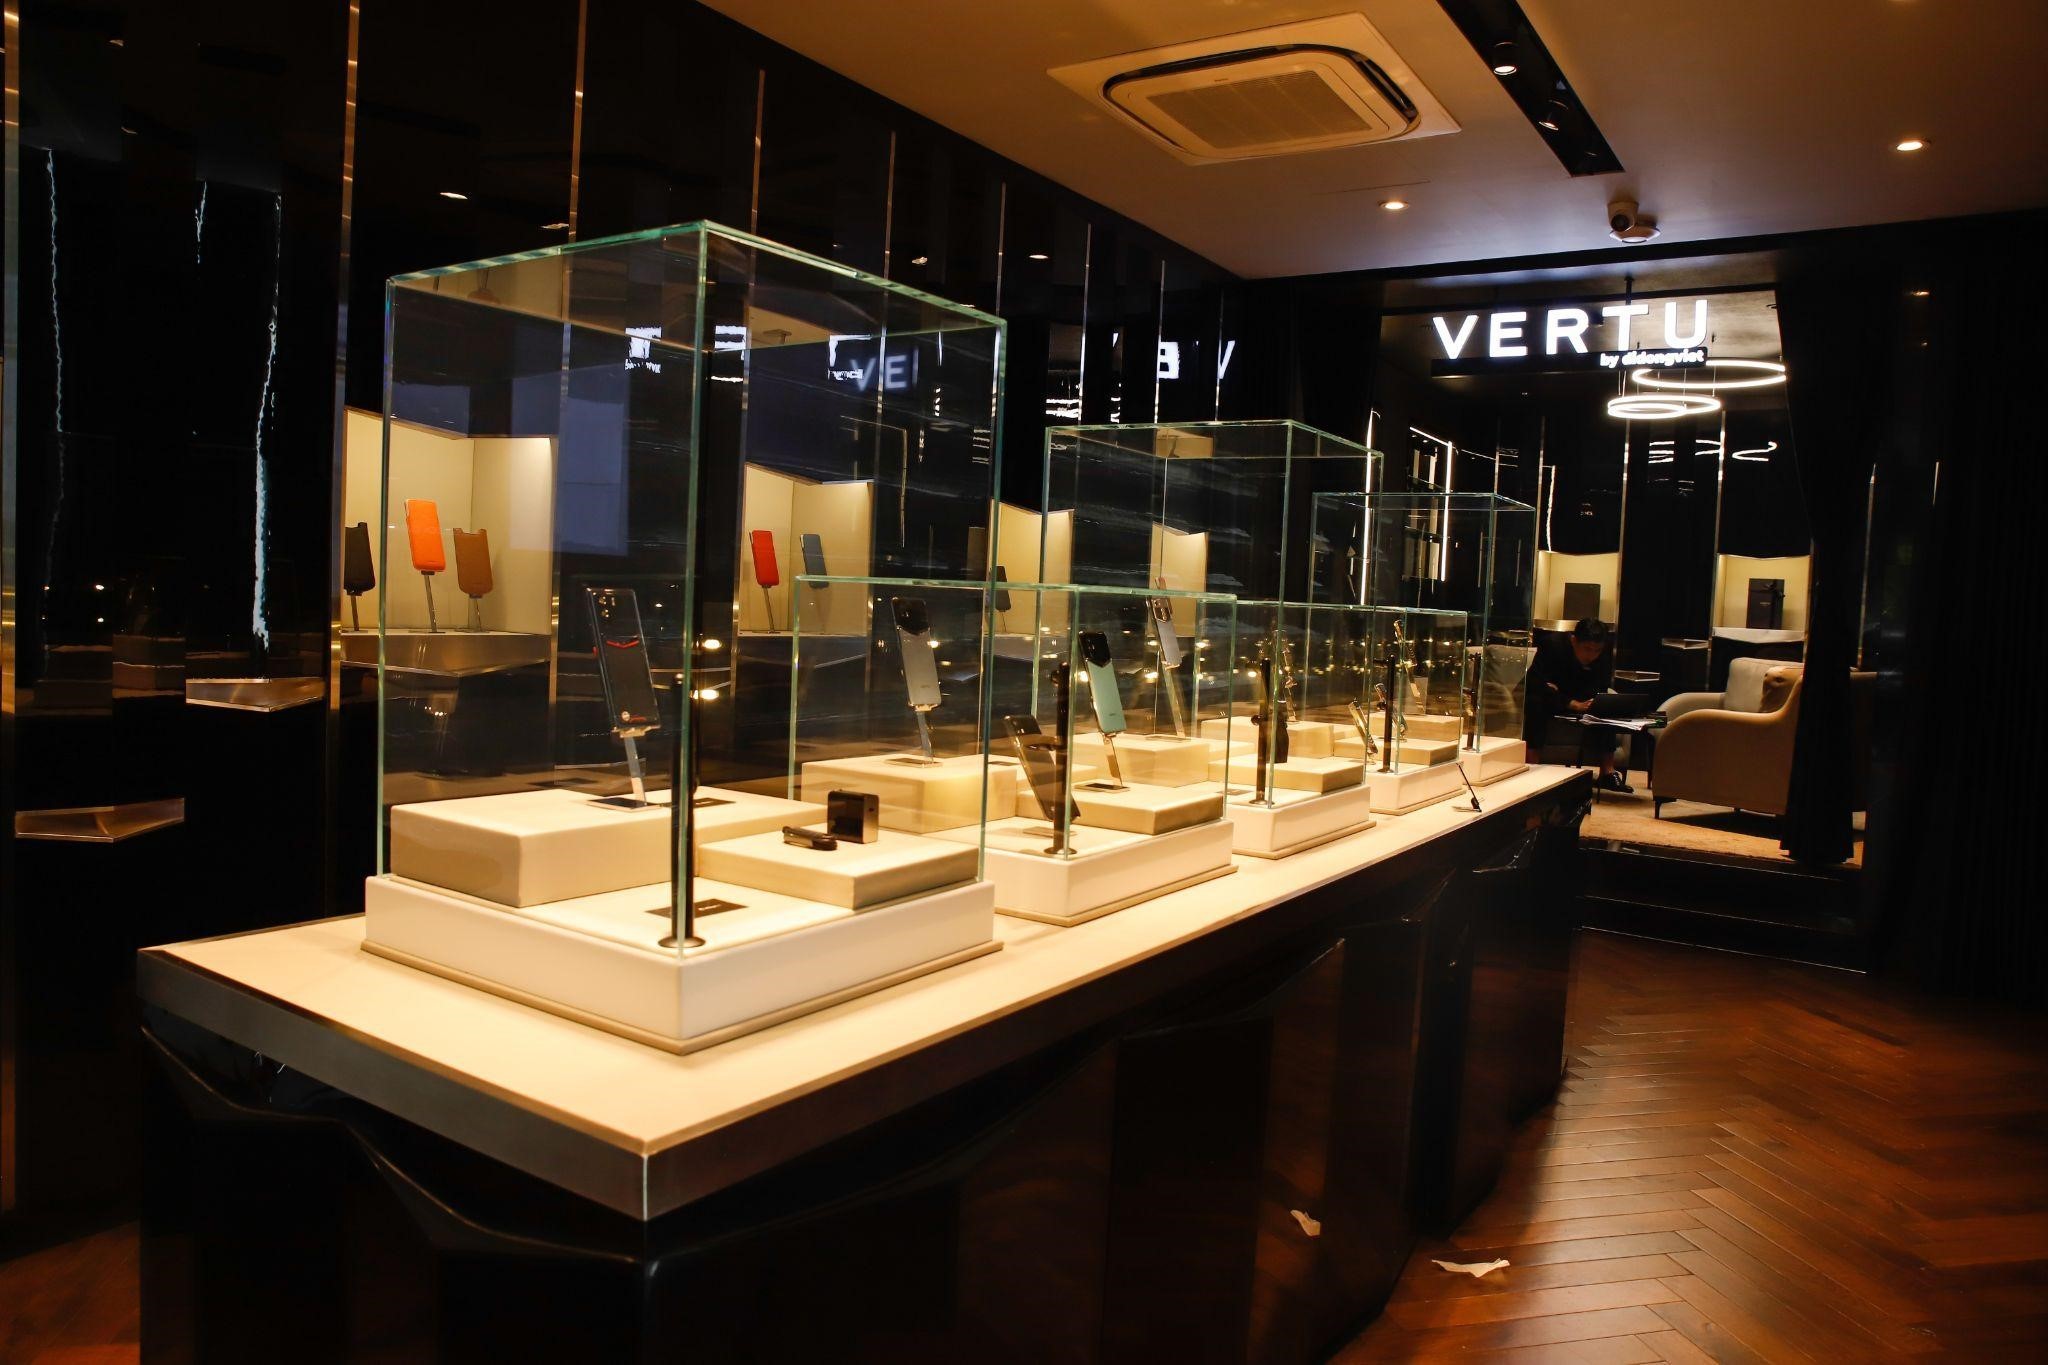 Từ không gian trưng bày đến sản phẩm tại Vertu Việt Nam đều theo tiêu chuẩn khắt khe từ Vertu England.